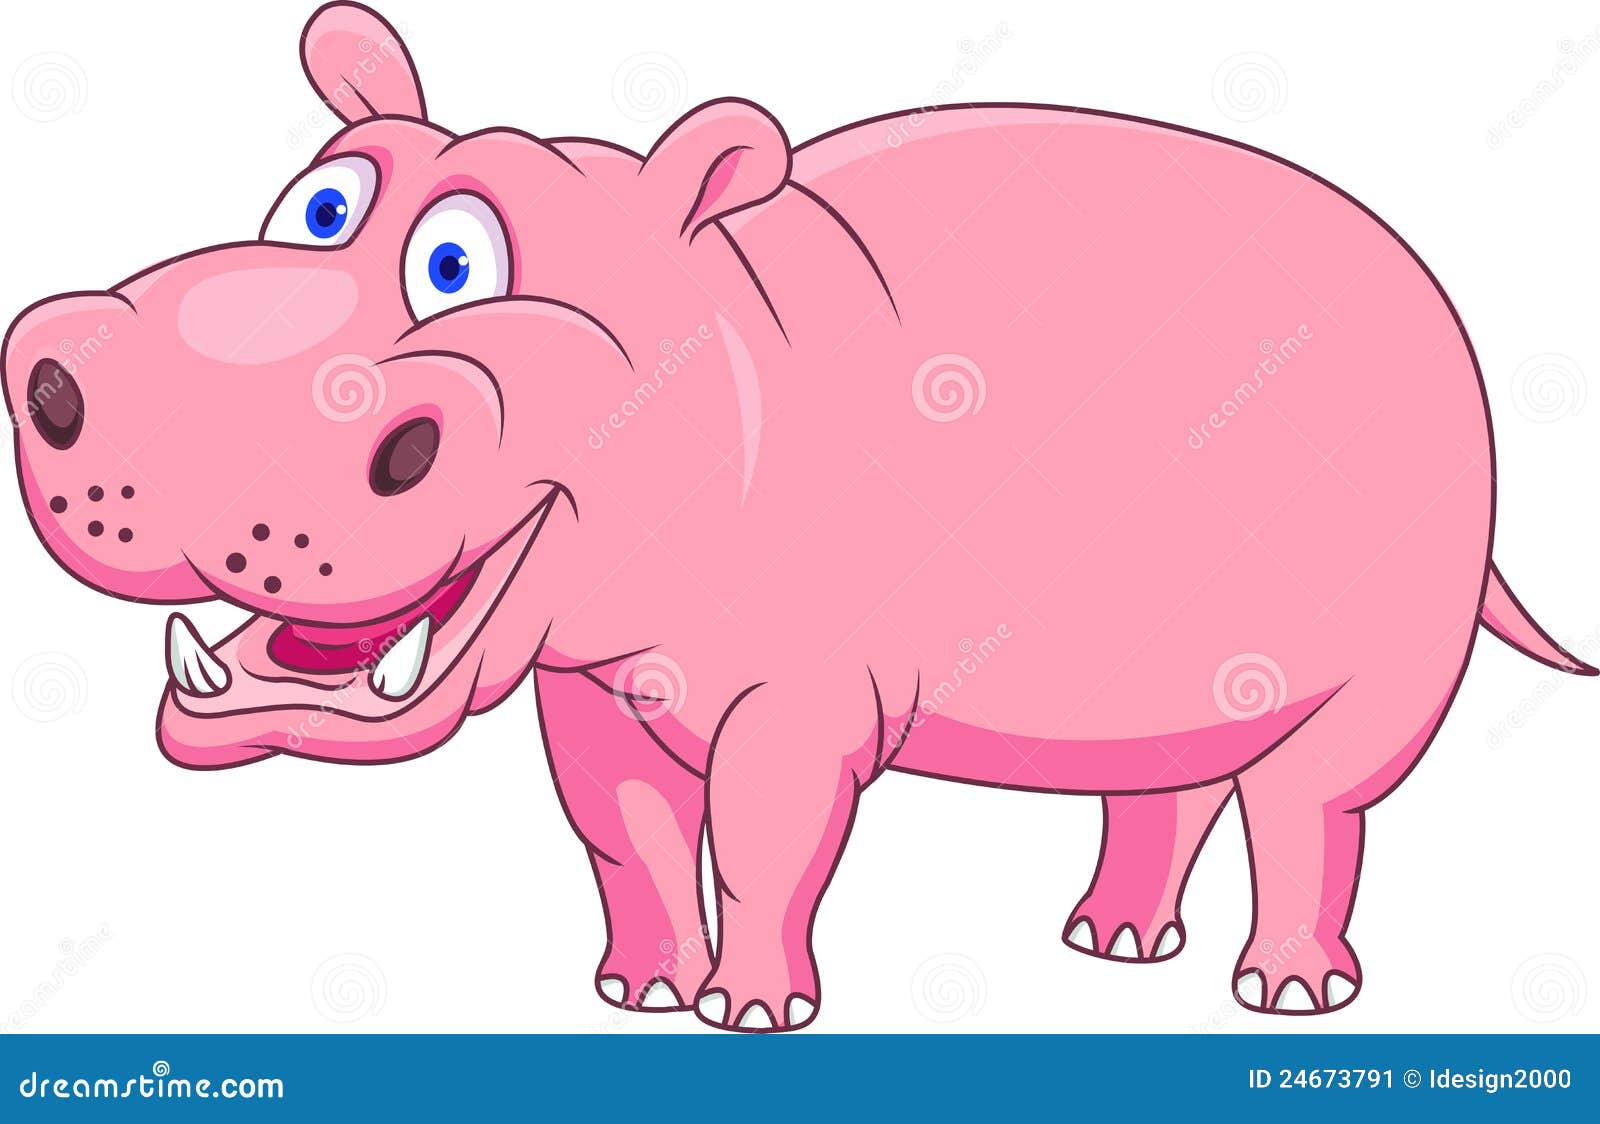 funny-hippo-cartoon-24673791.jpg